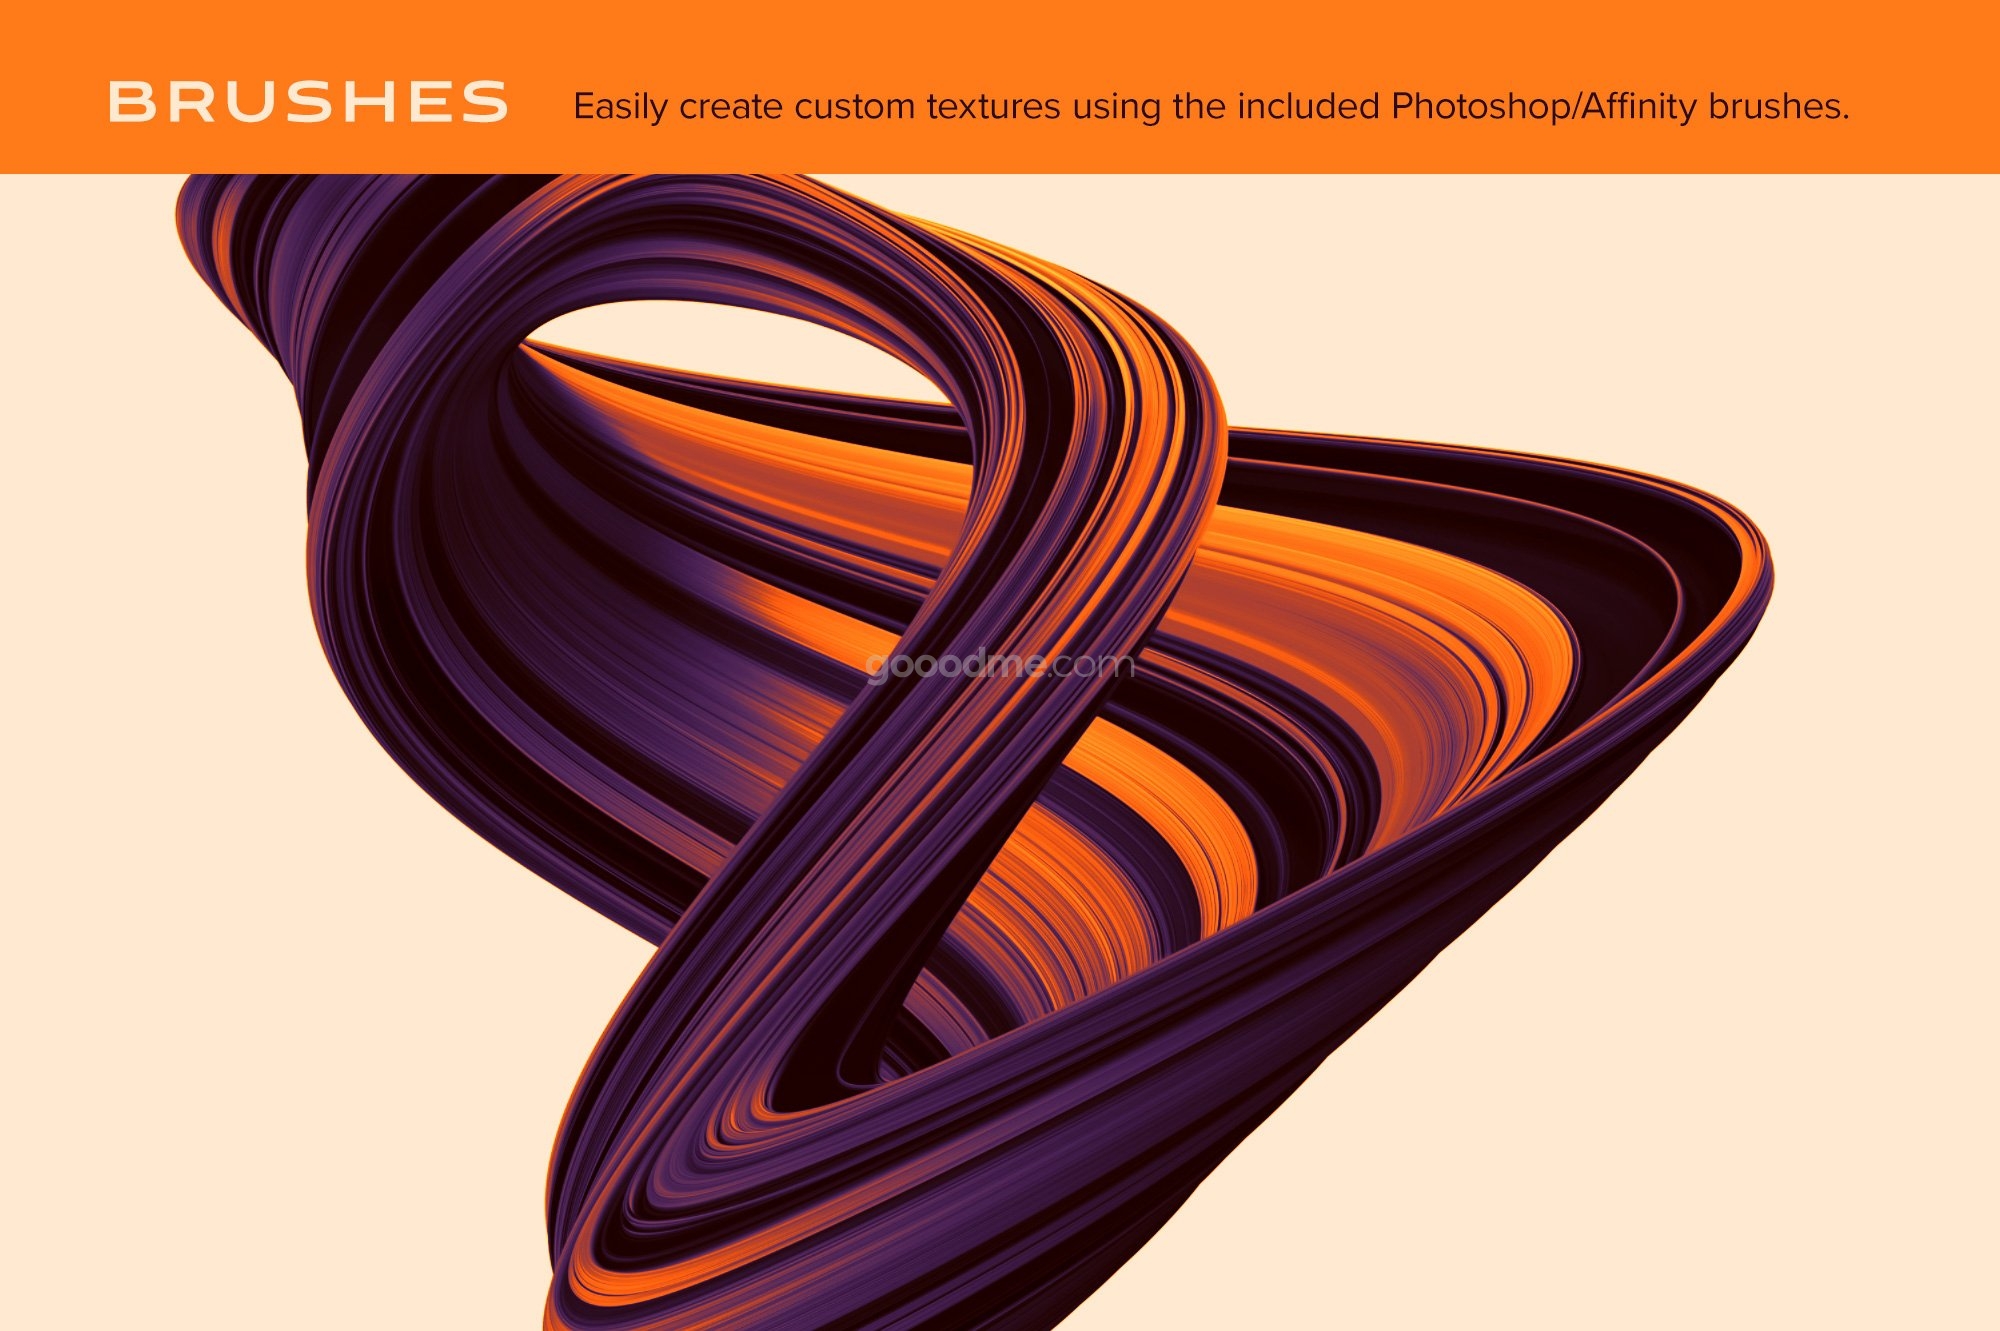 829 未来科幻3D炫彩抽象图形扭曲旋转肌理背景图片笔刷PS设计素材 Nexus Swirling Abstract Shapes